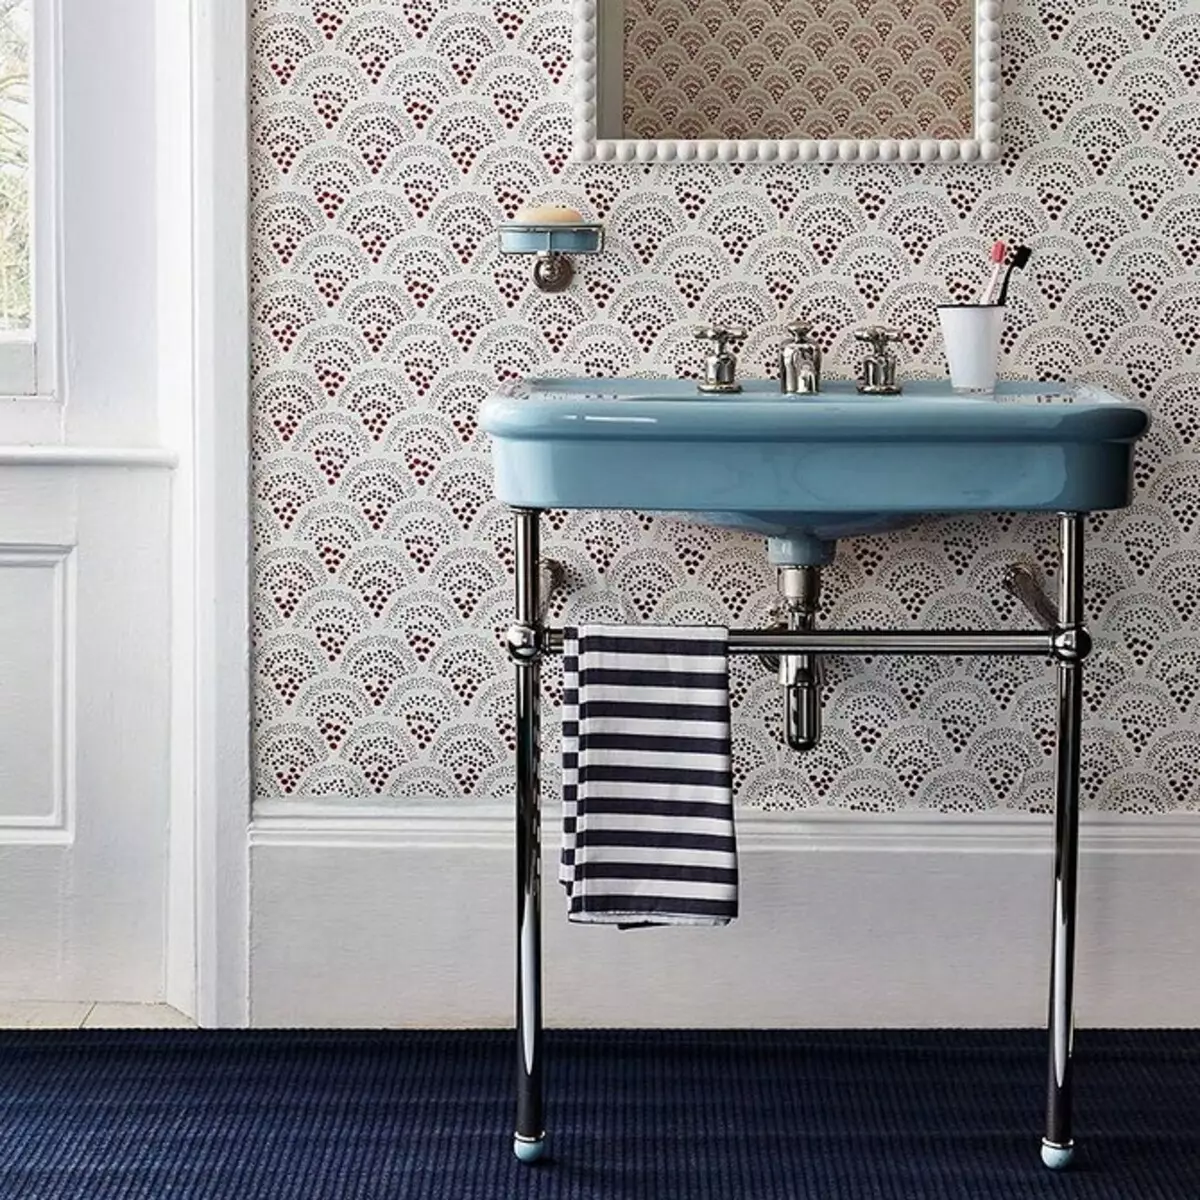 Fasjonabel design av et blått bad: Vi velger nyanser, teksturer og materialer 3036_144